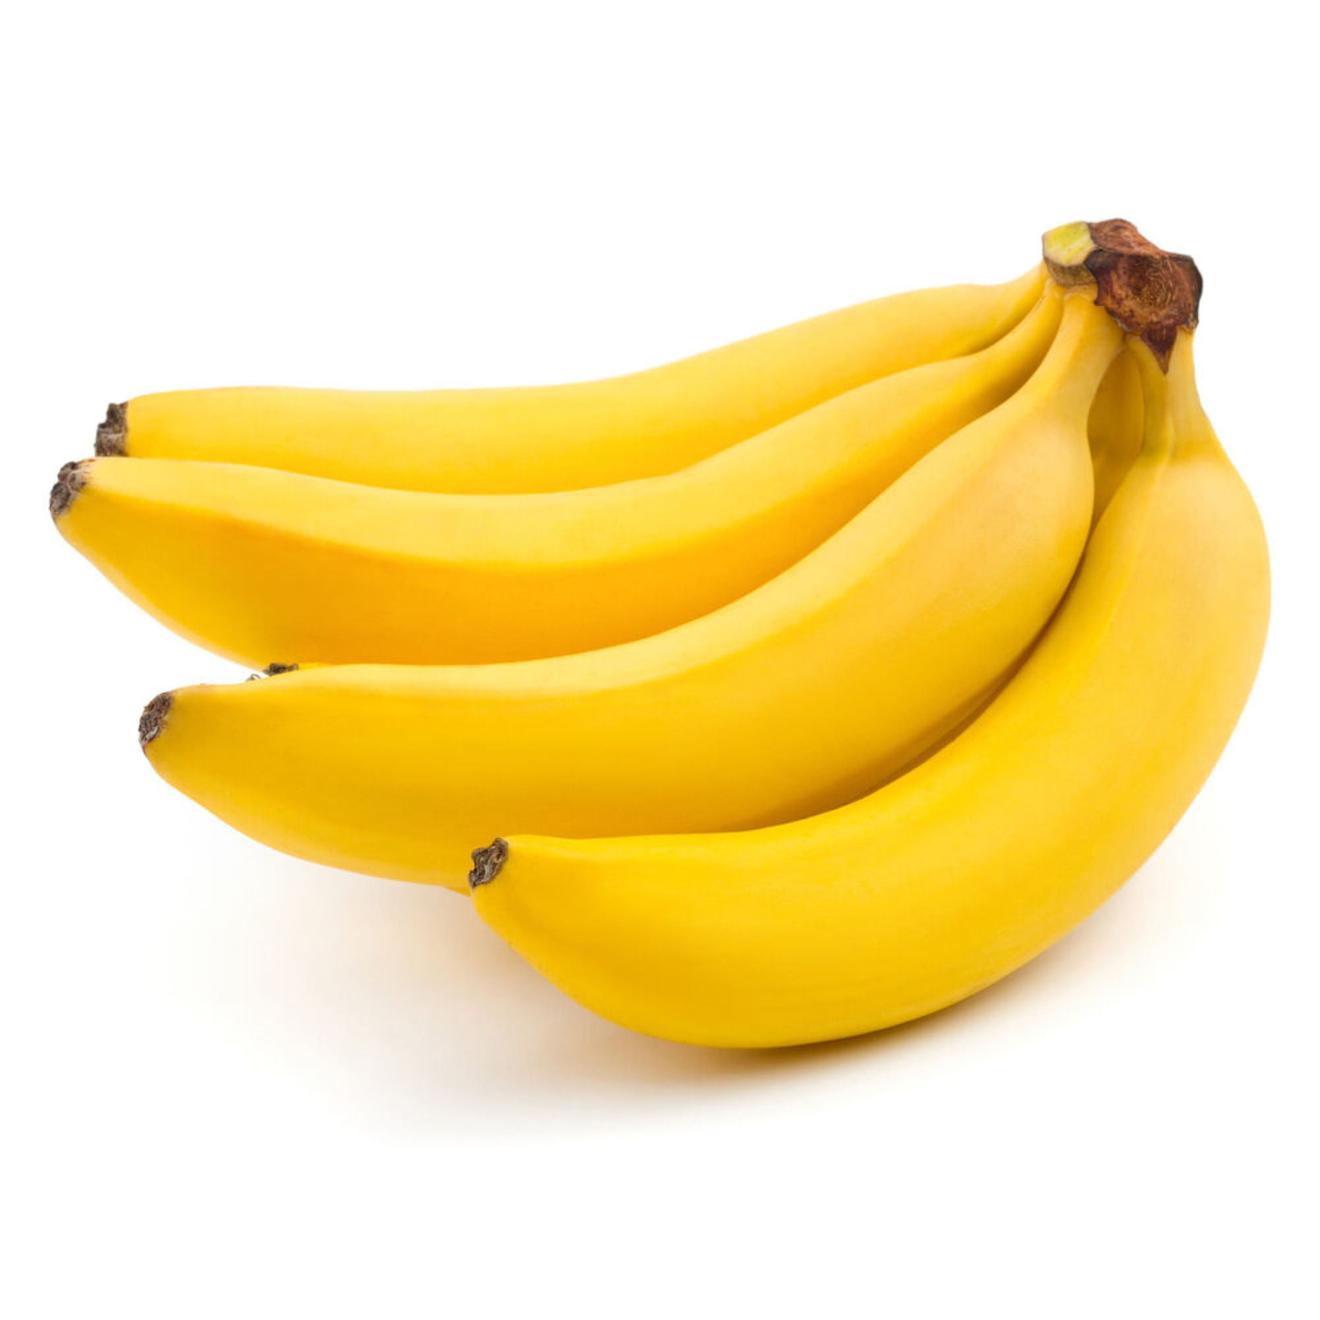 Oferta de Banana seleccion x kg. por $1699 en Carrefour